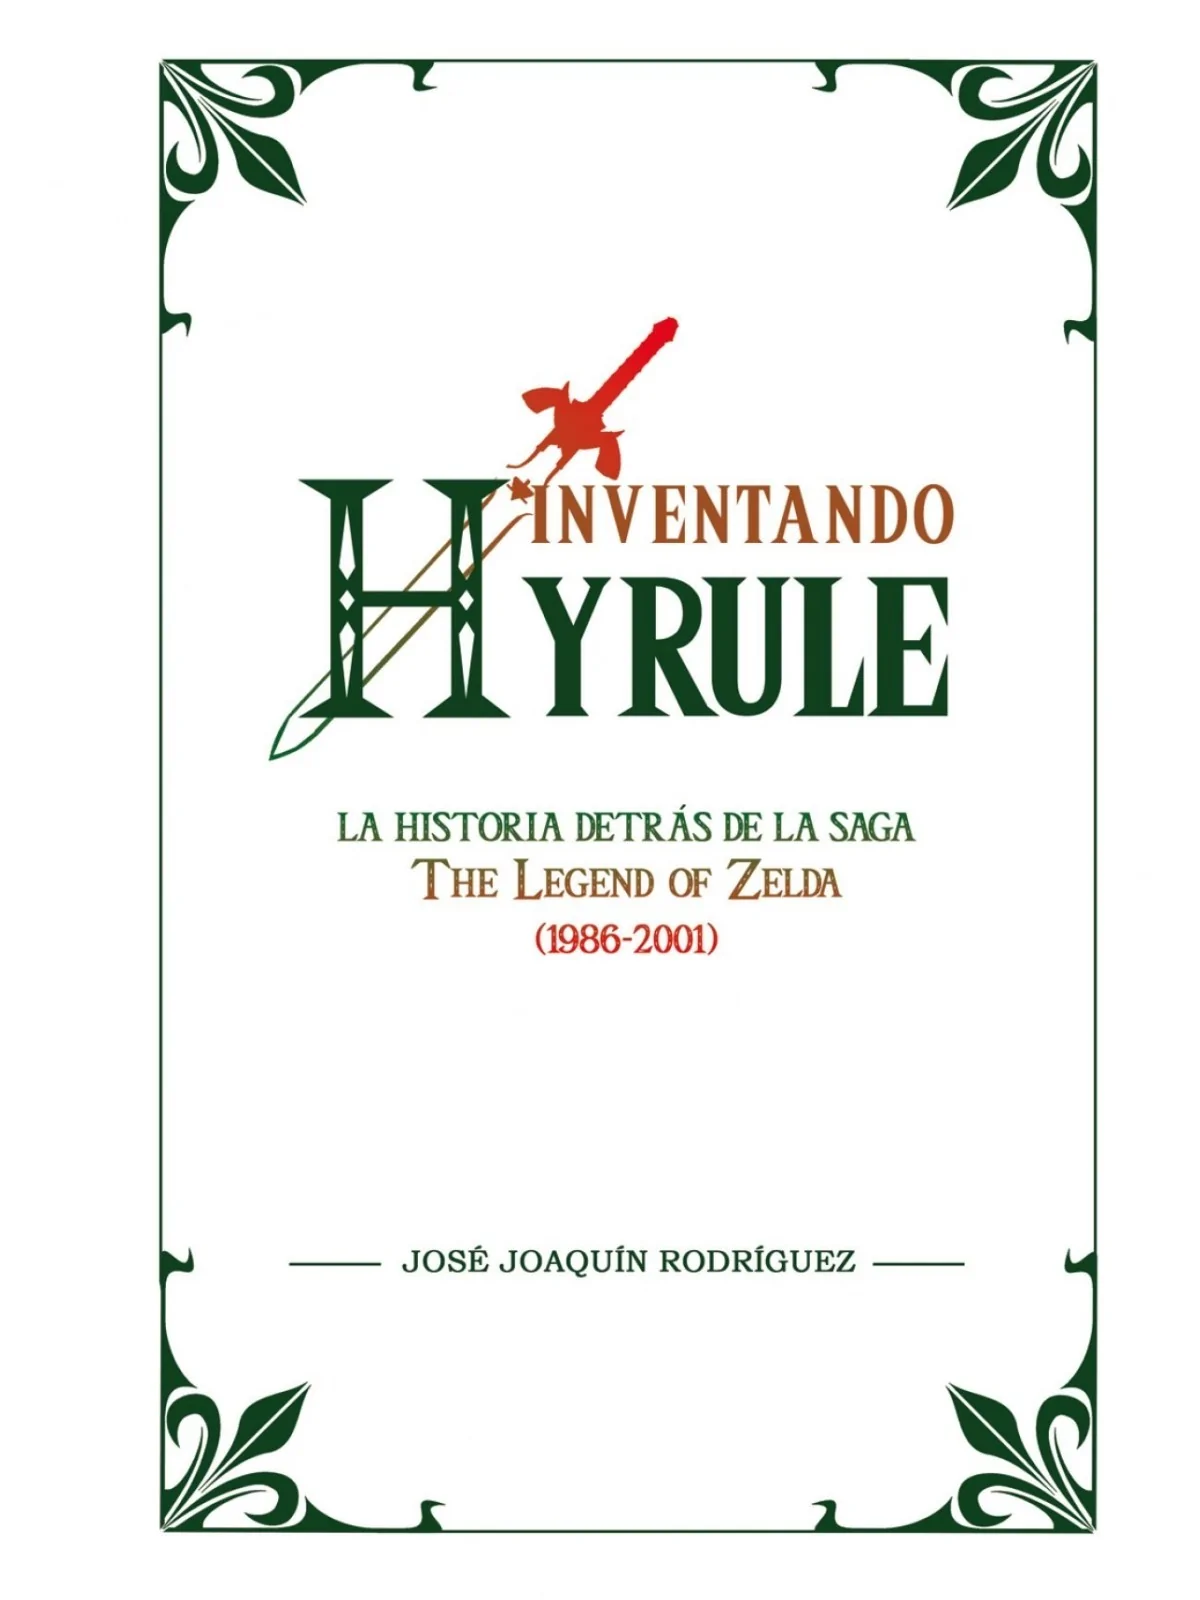 Comprar Inventando Hyrule barato al mejor precio 18,95 € de DOLMEN EDI